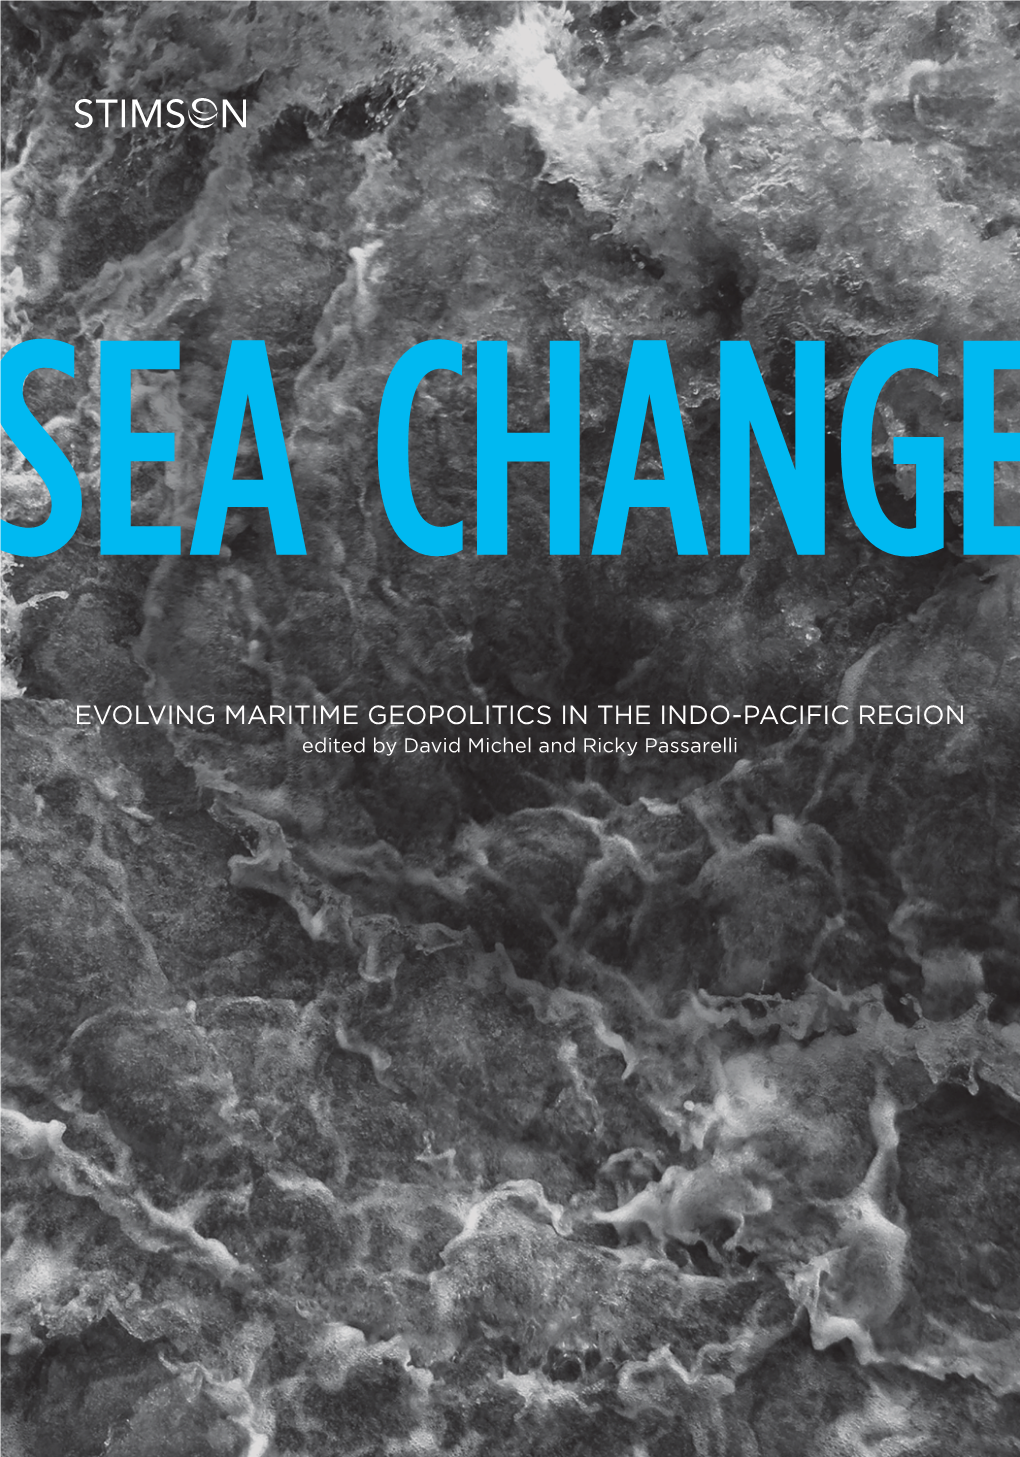 Sea Change: Evolving Maritime Geopolitics in the Indo-Pacific Region